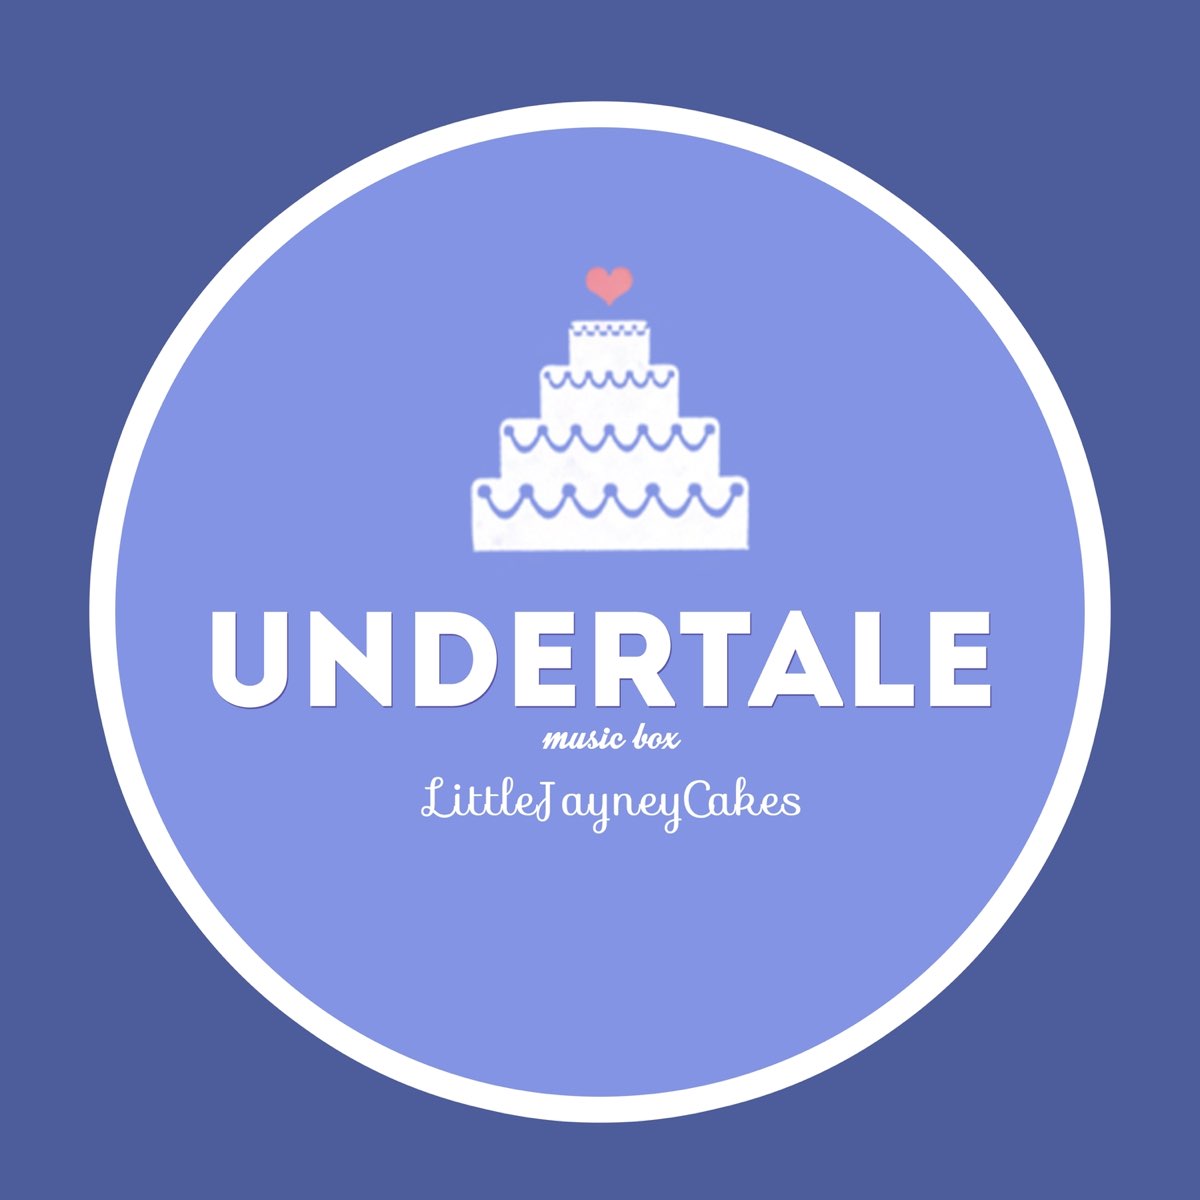 Undertale (Music Box) - Single by Jayn on Apple Music